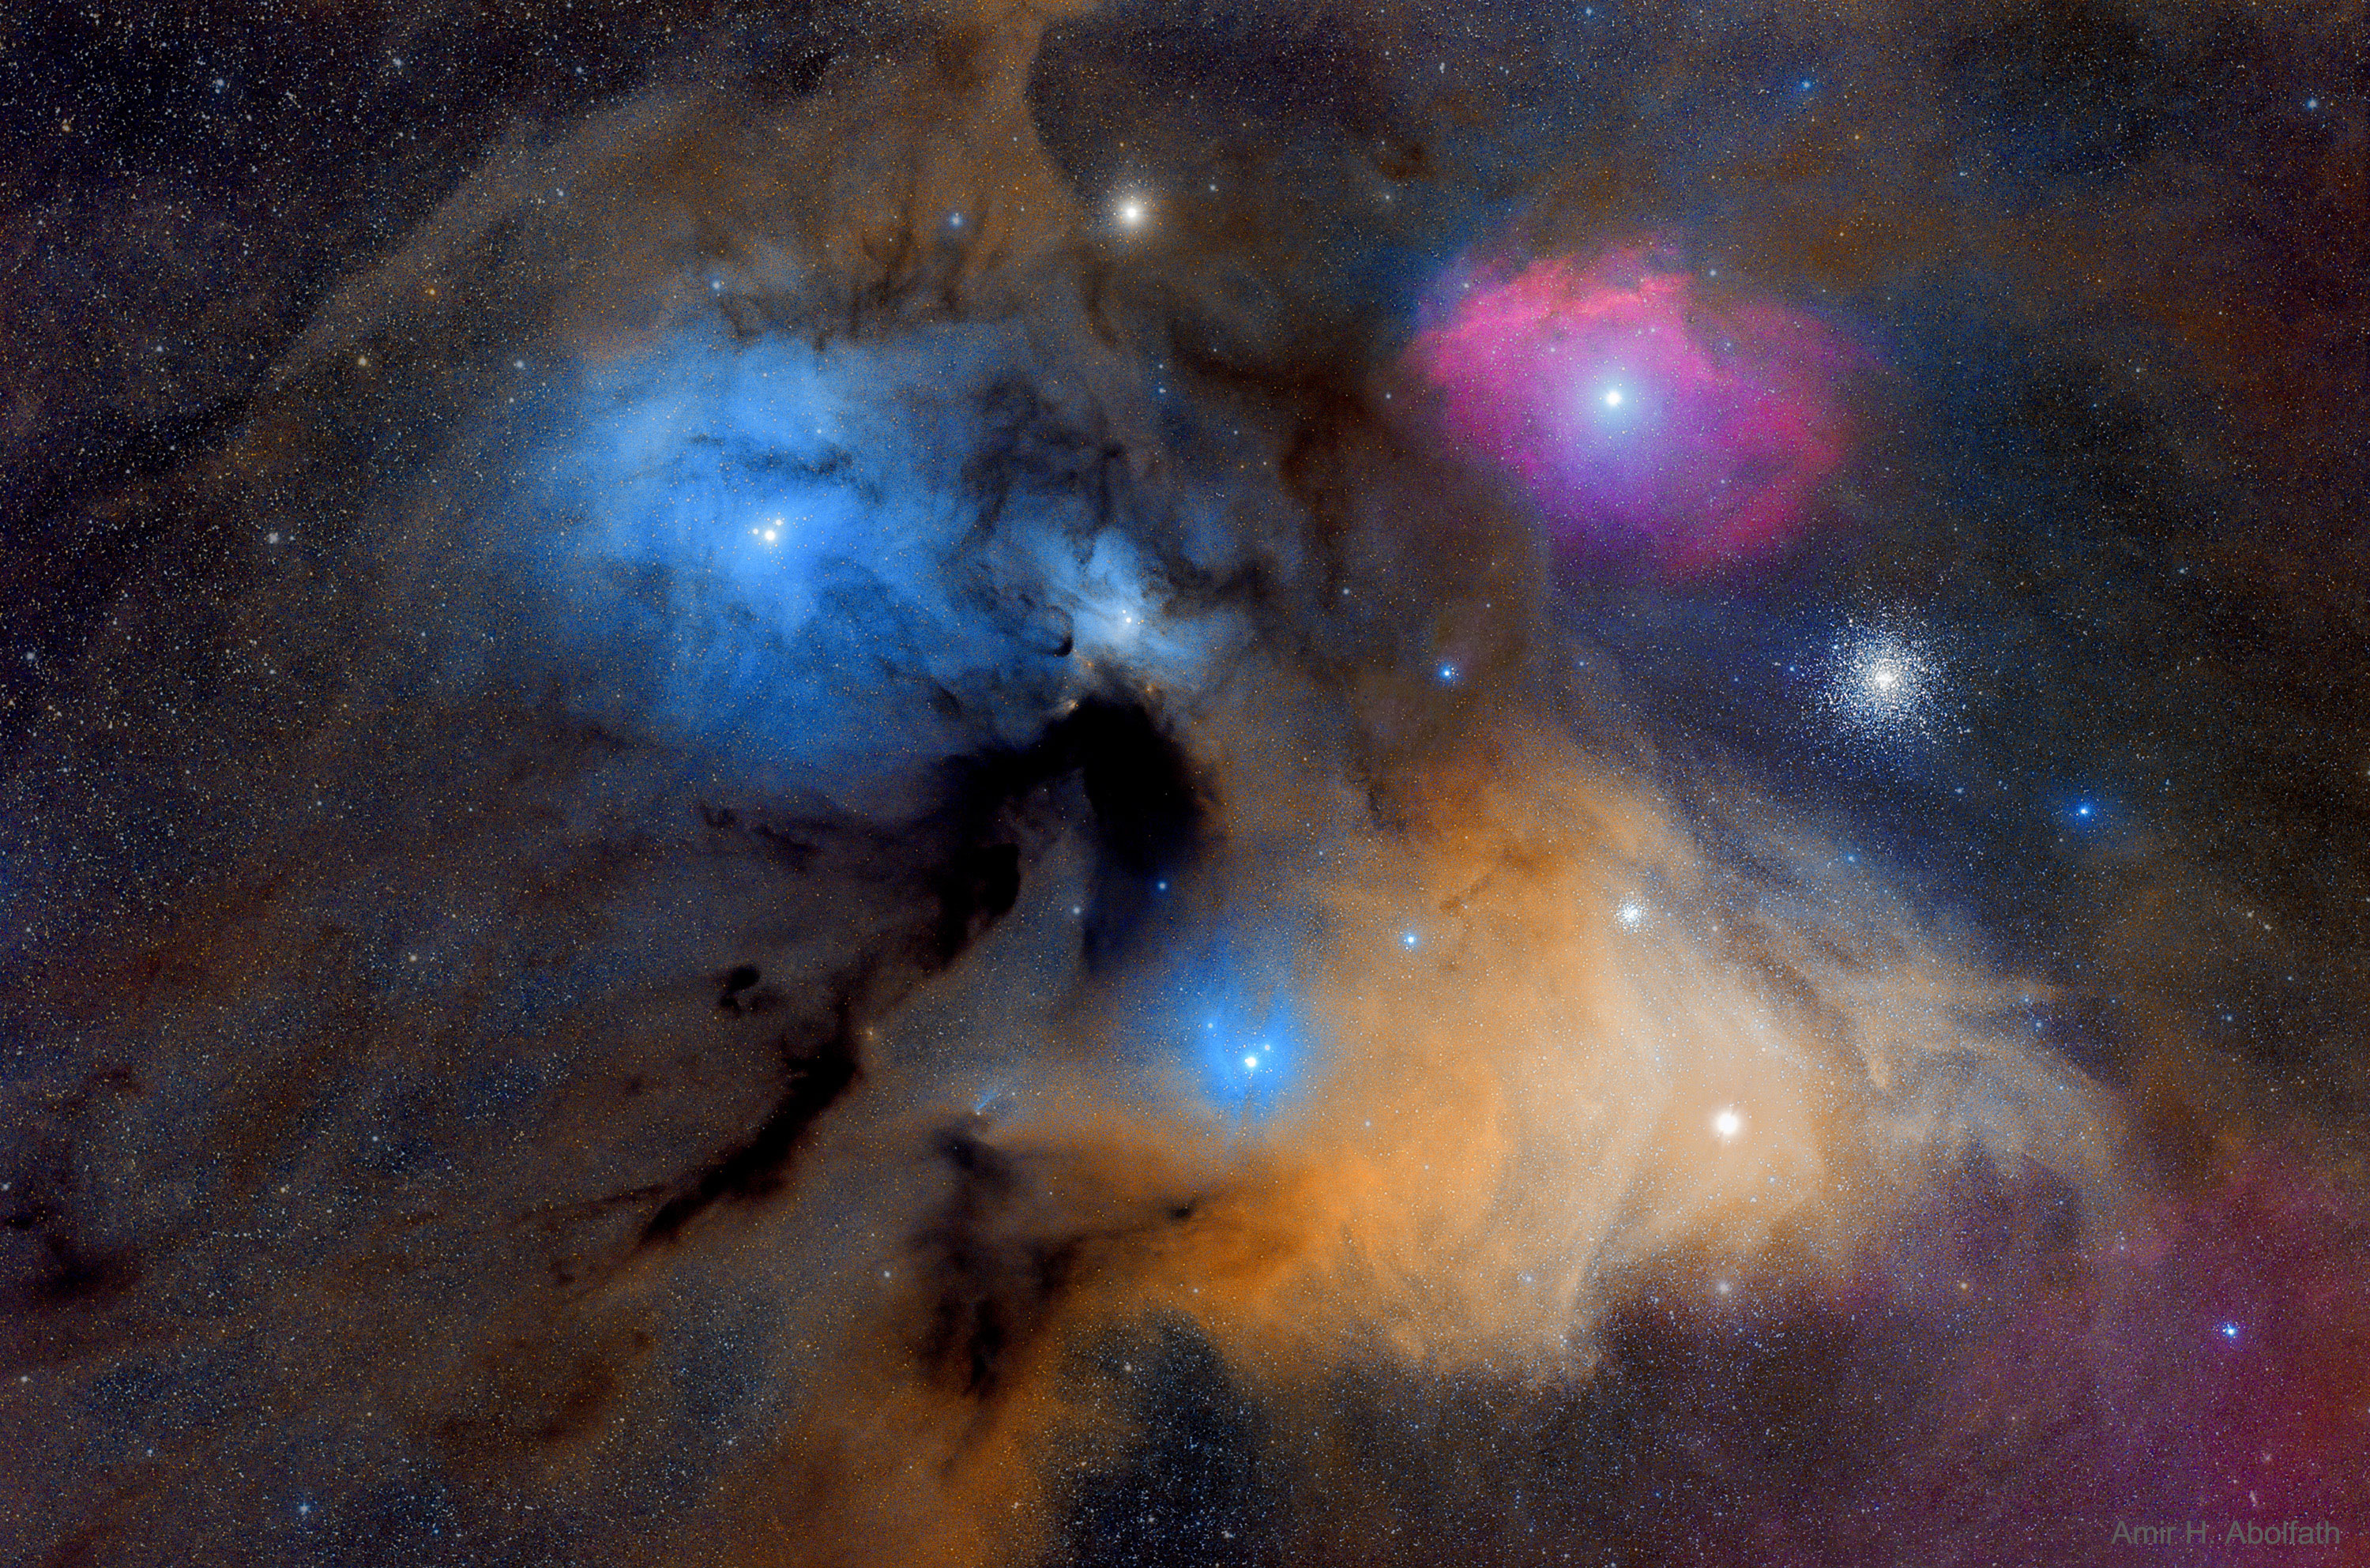 Las coloridas nubes de Rho Ophiuchi | Imagen astronomía diaria - Observatorio